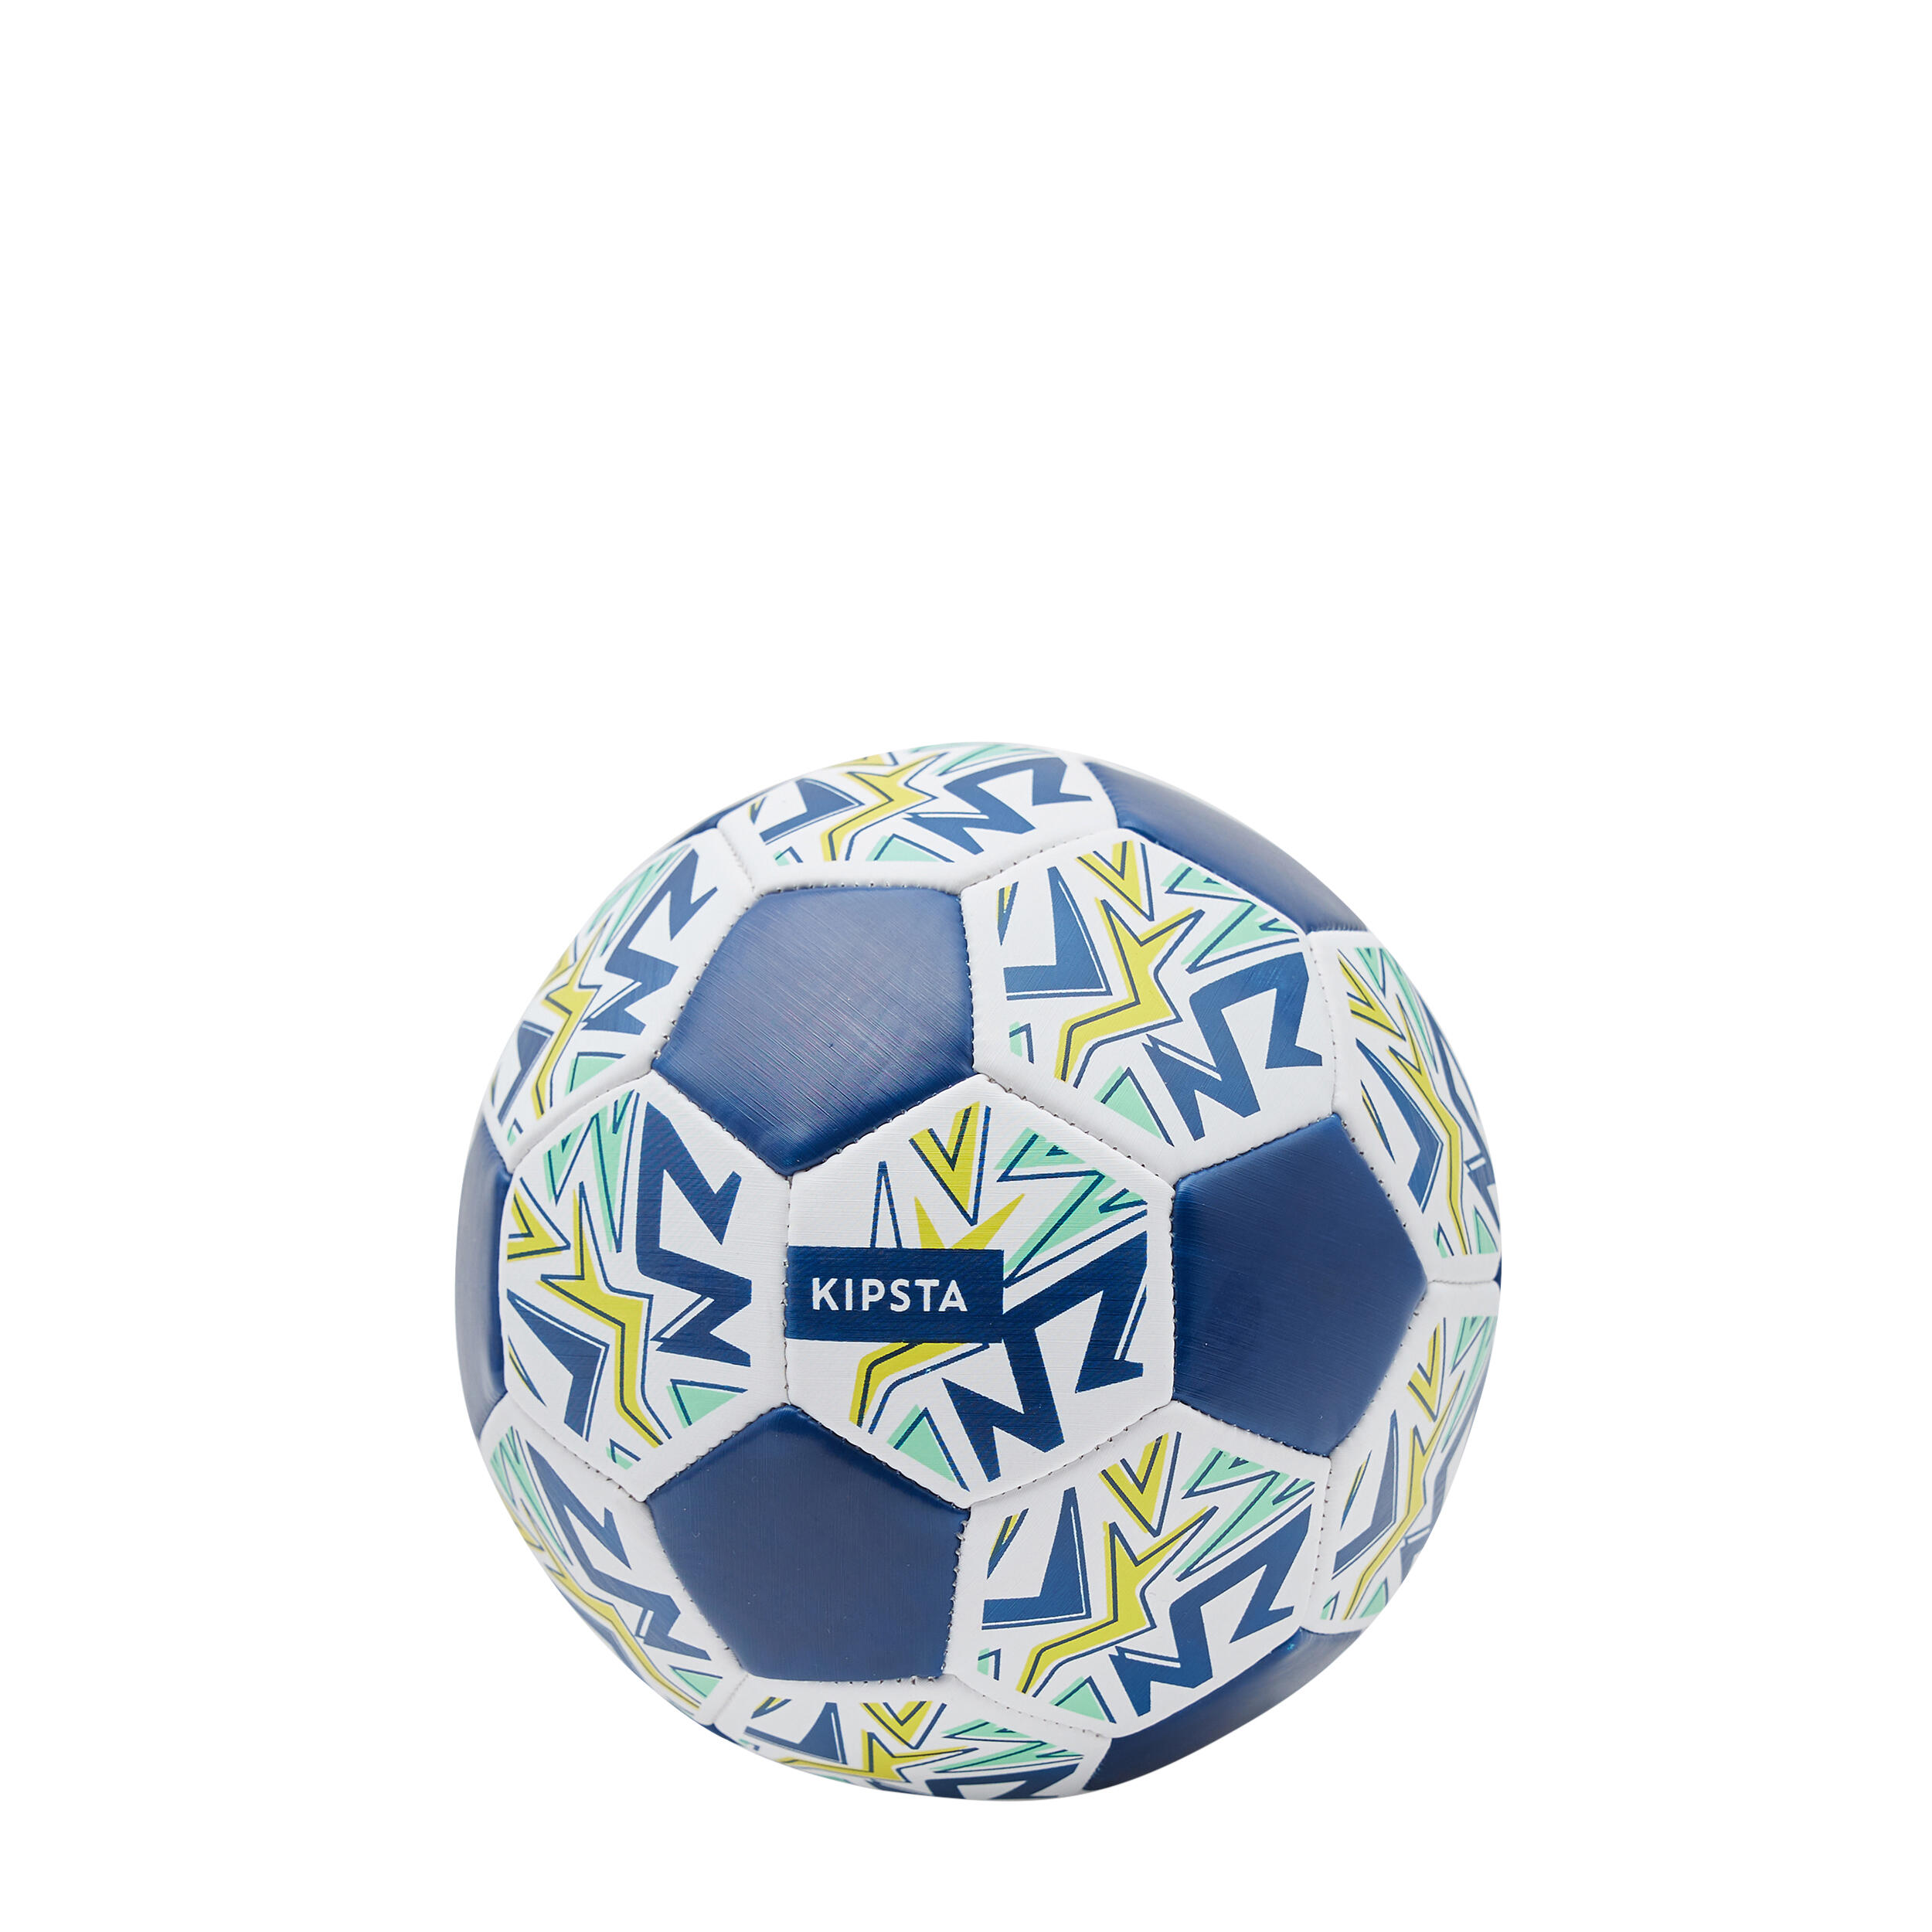 Zdjęcia - Piłka do piłki nożnej Kipsta Minipiłka do piłki nożnej  Learning Ball rozmiar 1 40 M 